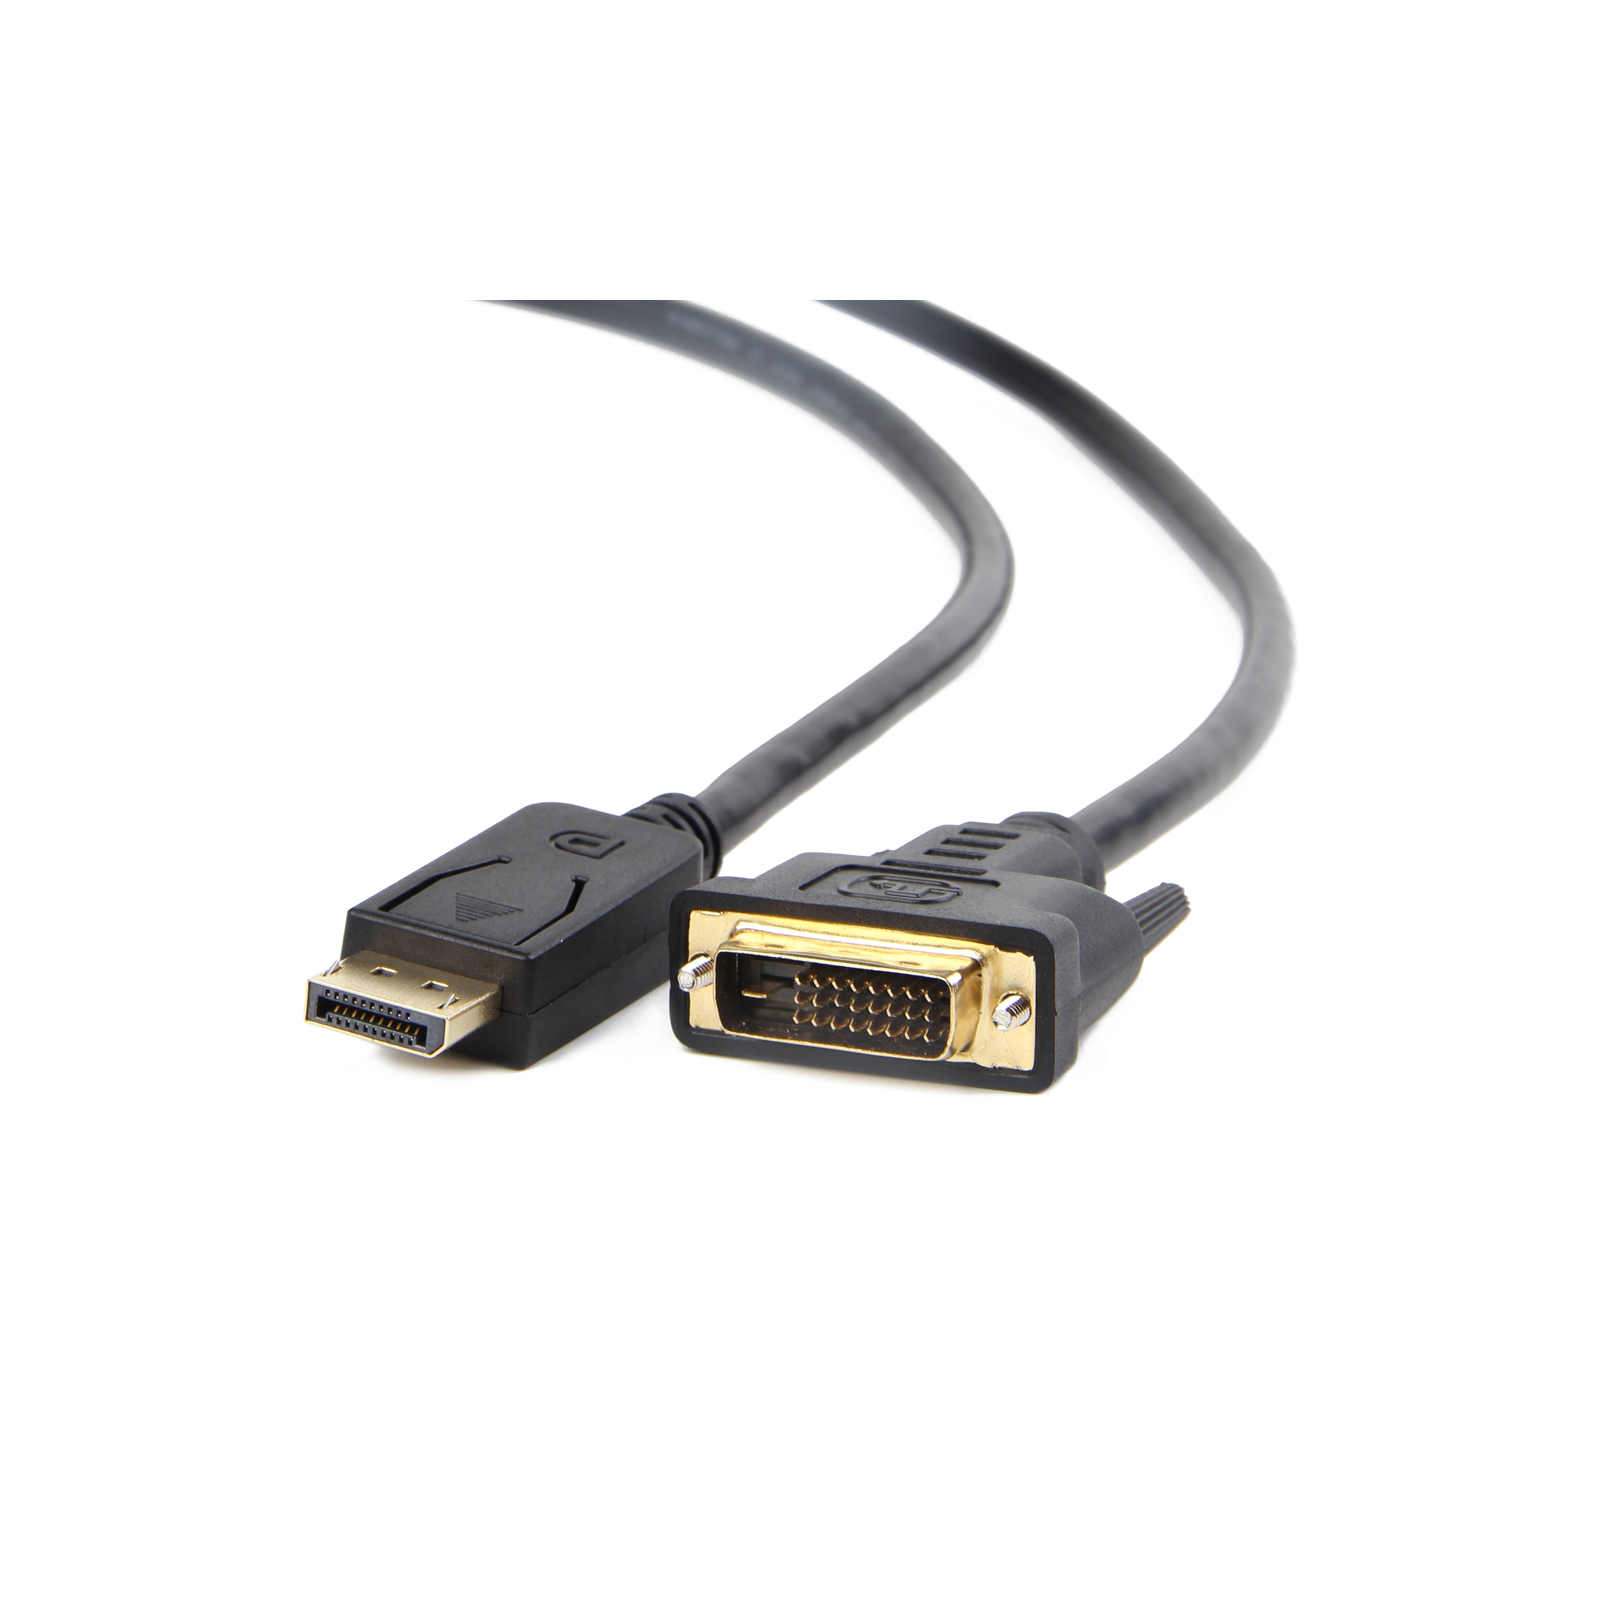 Кабель мультимедійний Display Port to DVI 24+1pin, 1.0m Cablexpert (CC-DPM-DVIM-1M)